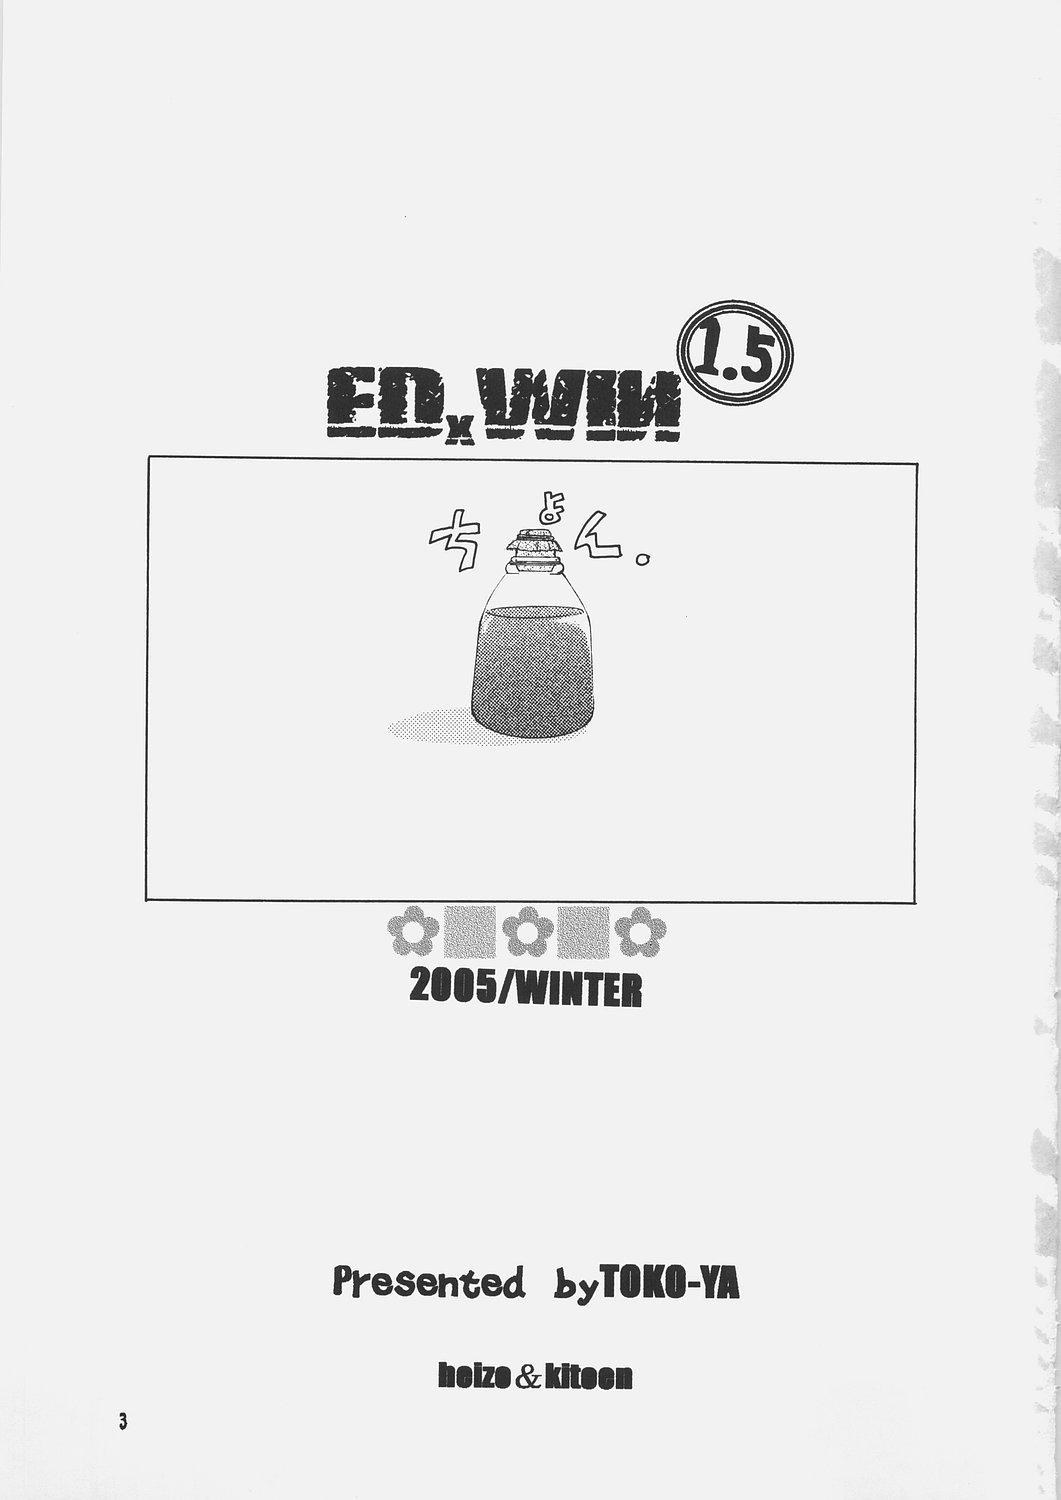 ED x WIN 1.5 1